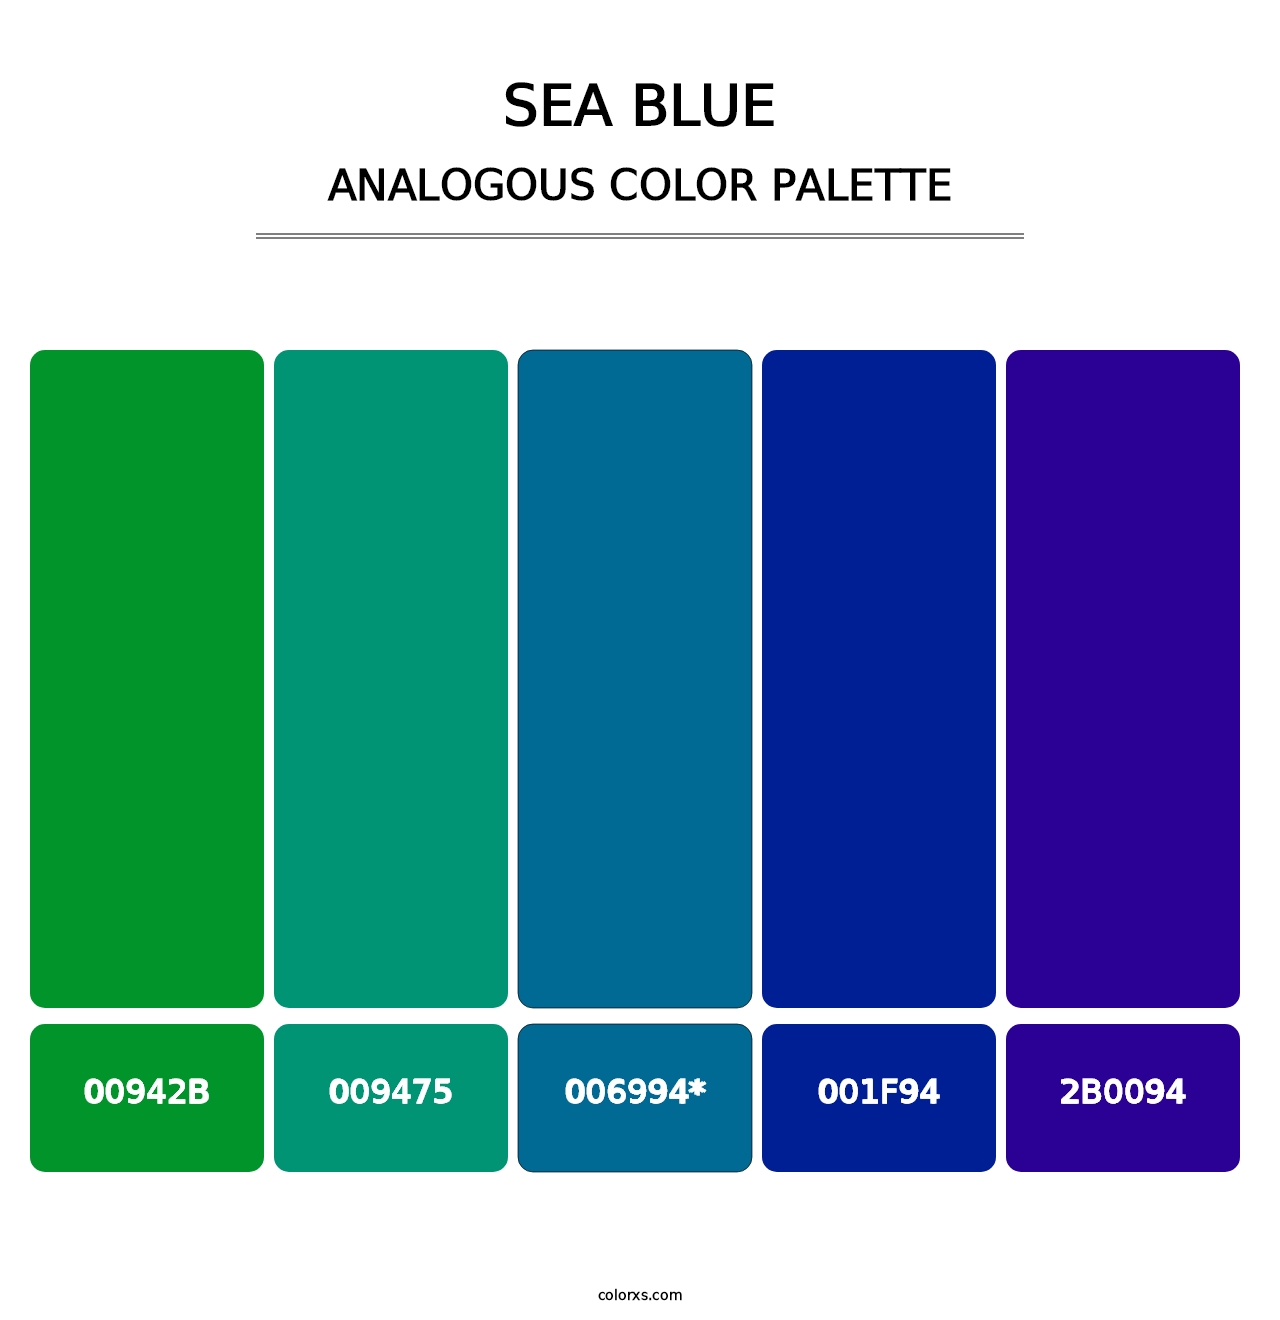 Sea Blue - Analogous Color Palette